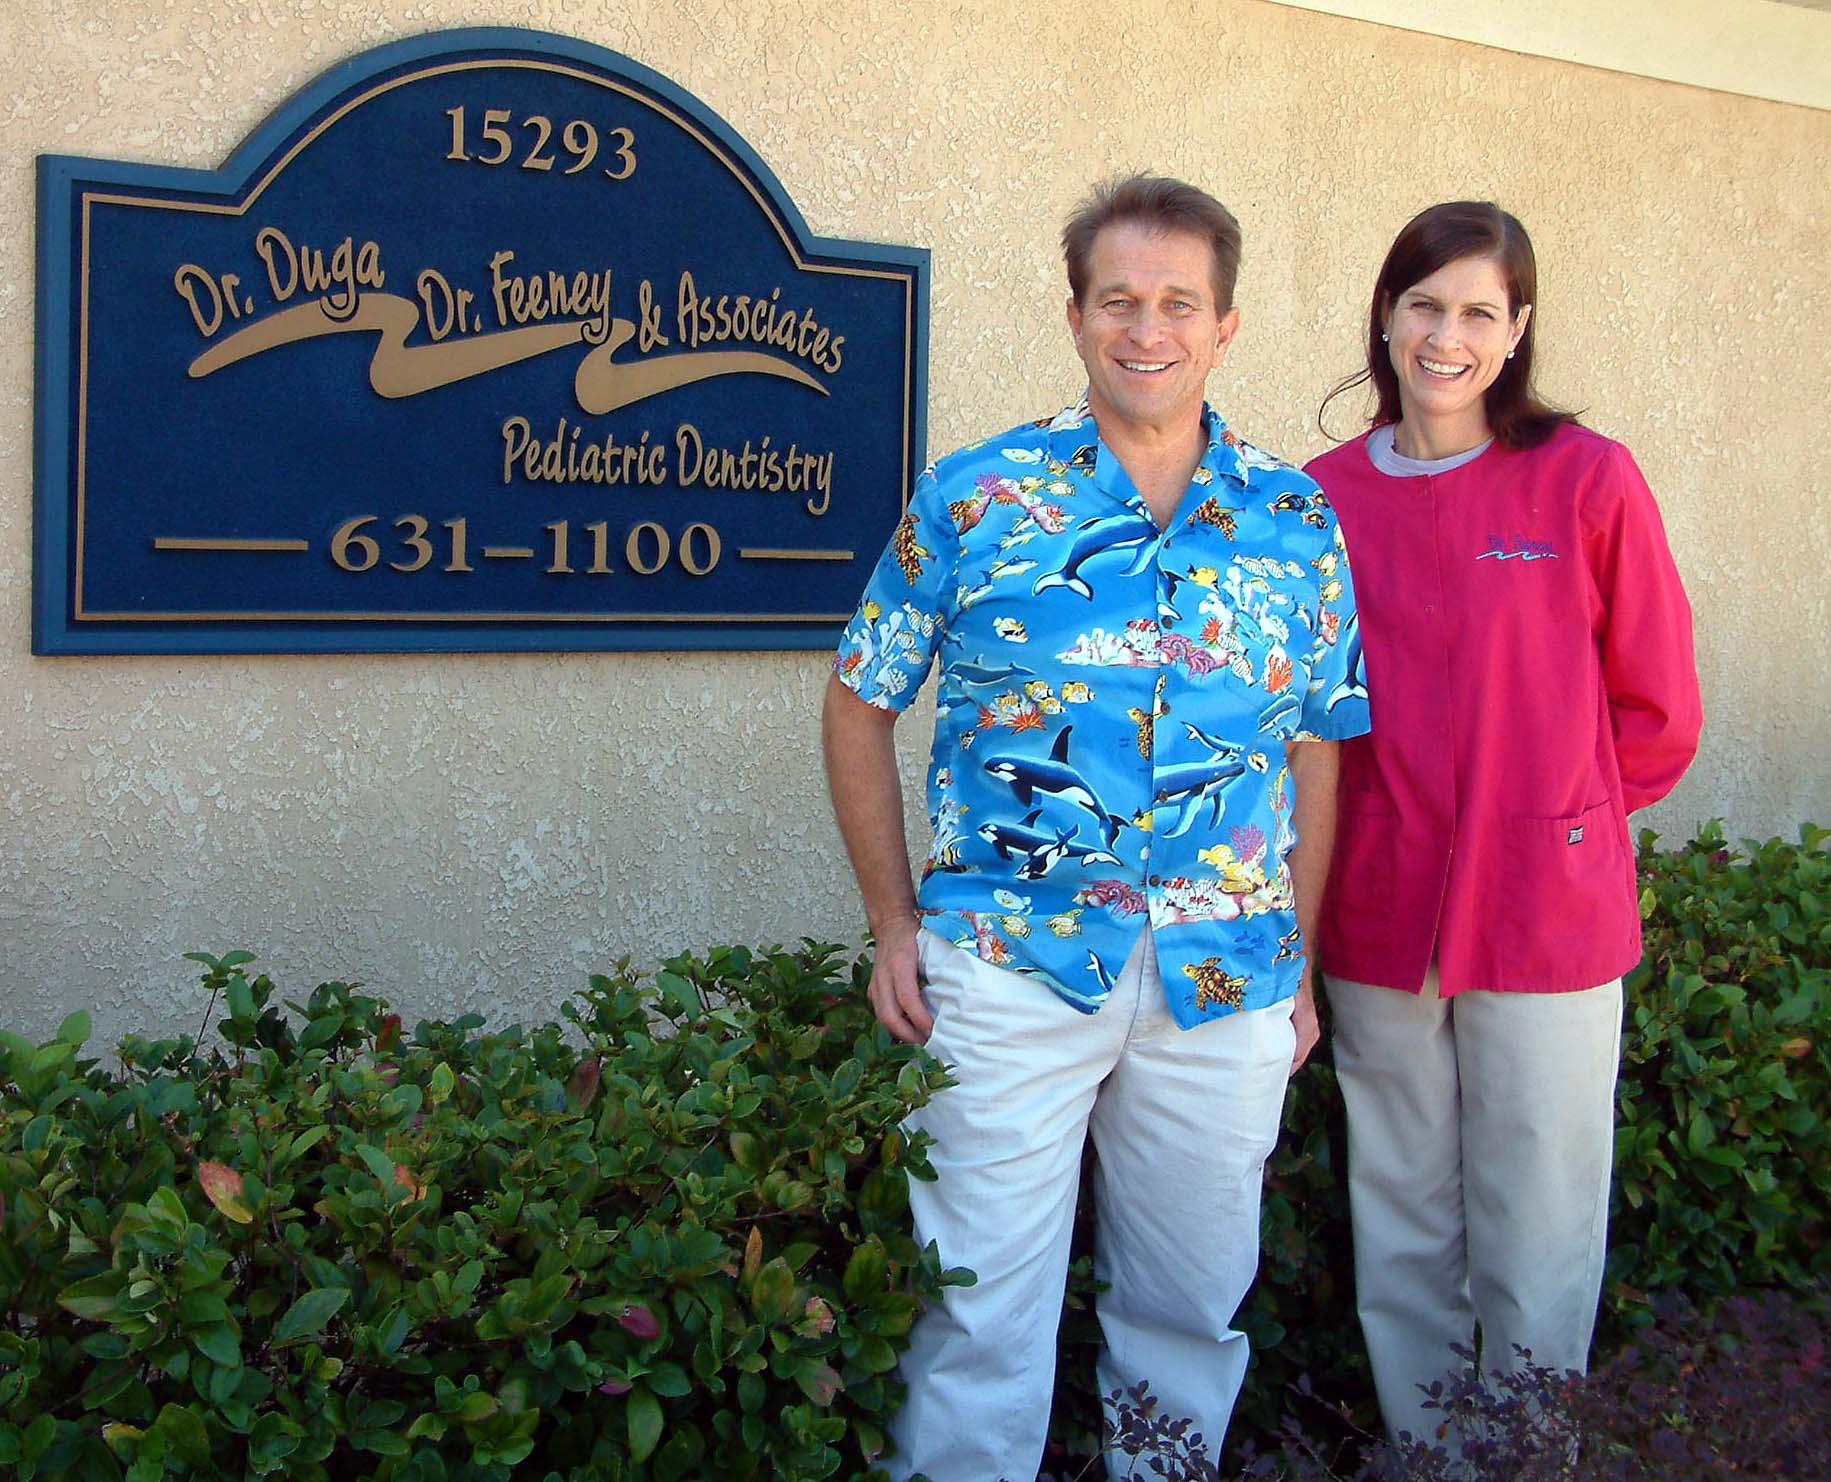 Foto Dr. Duga, Dr. Feeney & Associates Pediatric Dentistry de Dentistas Pediátricos en Tampa FL - Galería de ListasLocales.com